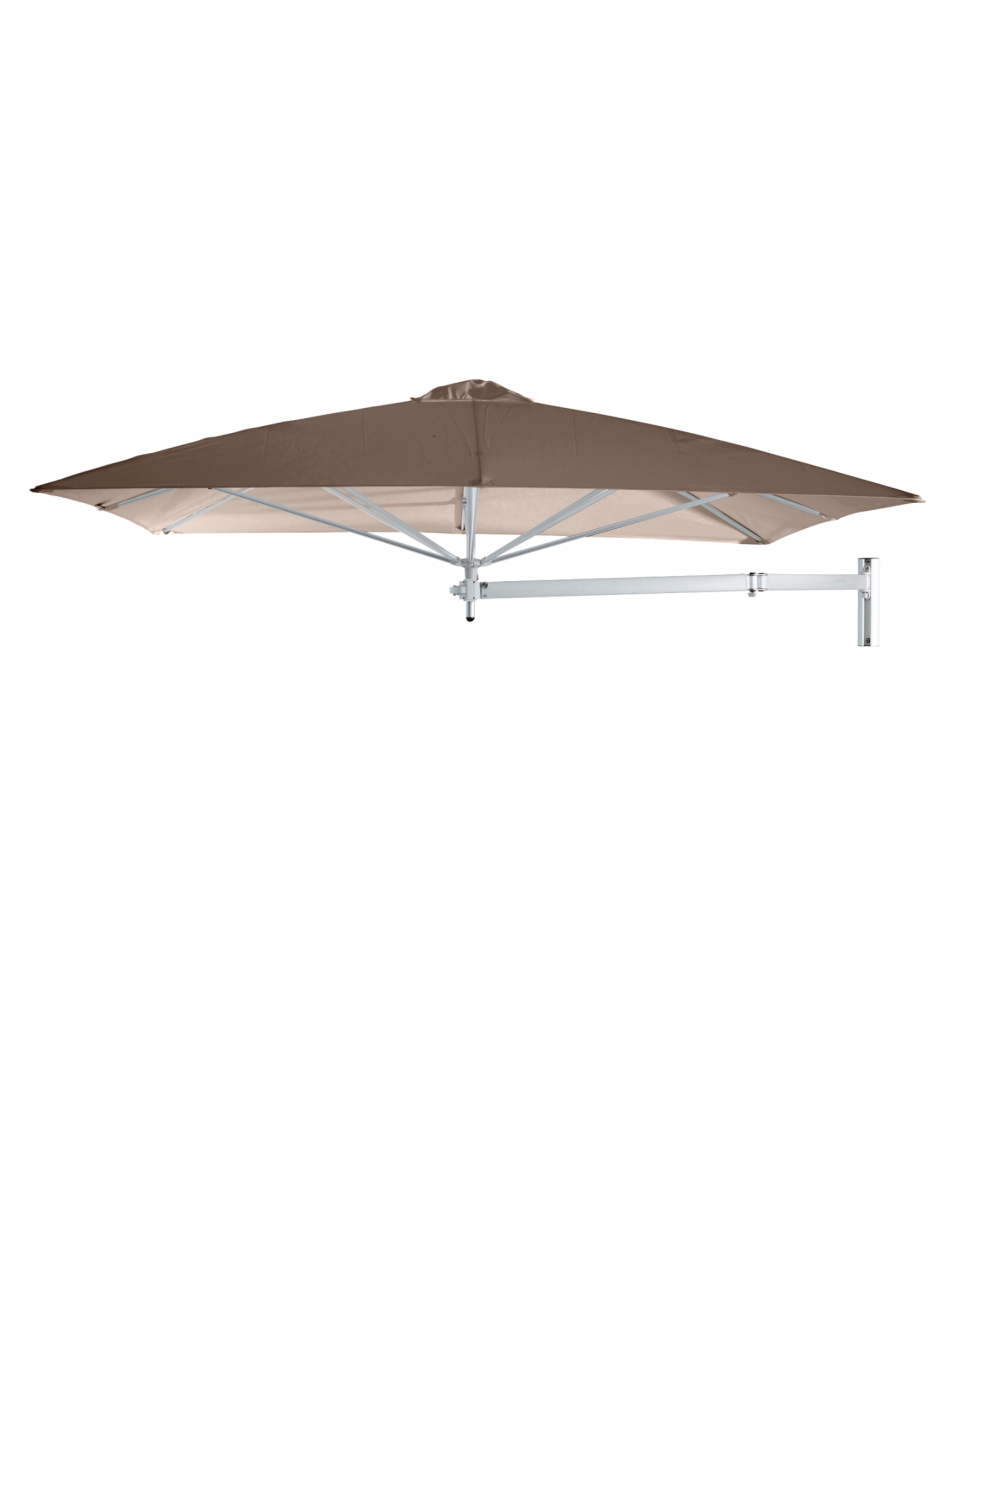 Square Outdoor Cantilever Wall Umbrella (7’ 6.6”) | Umbrosa Paraflex | Oroa.com